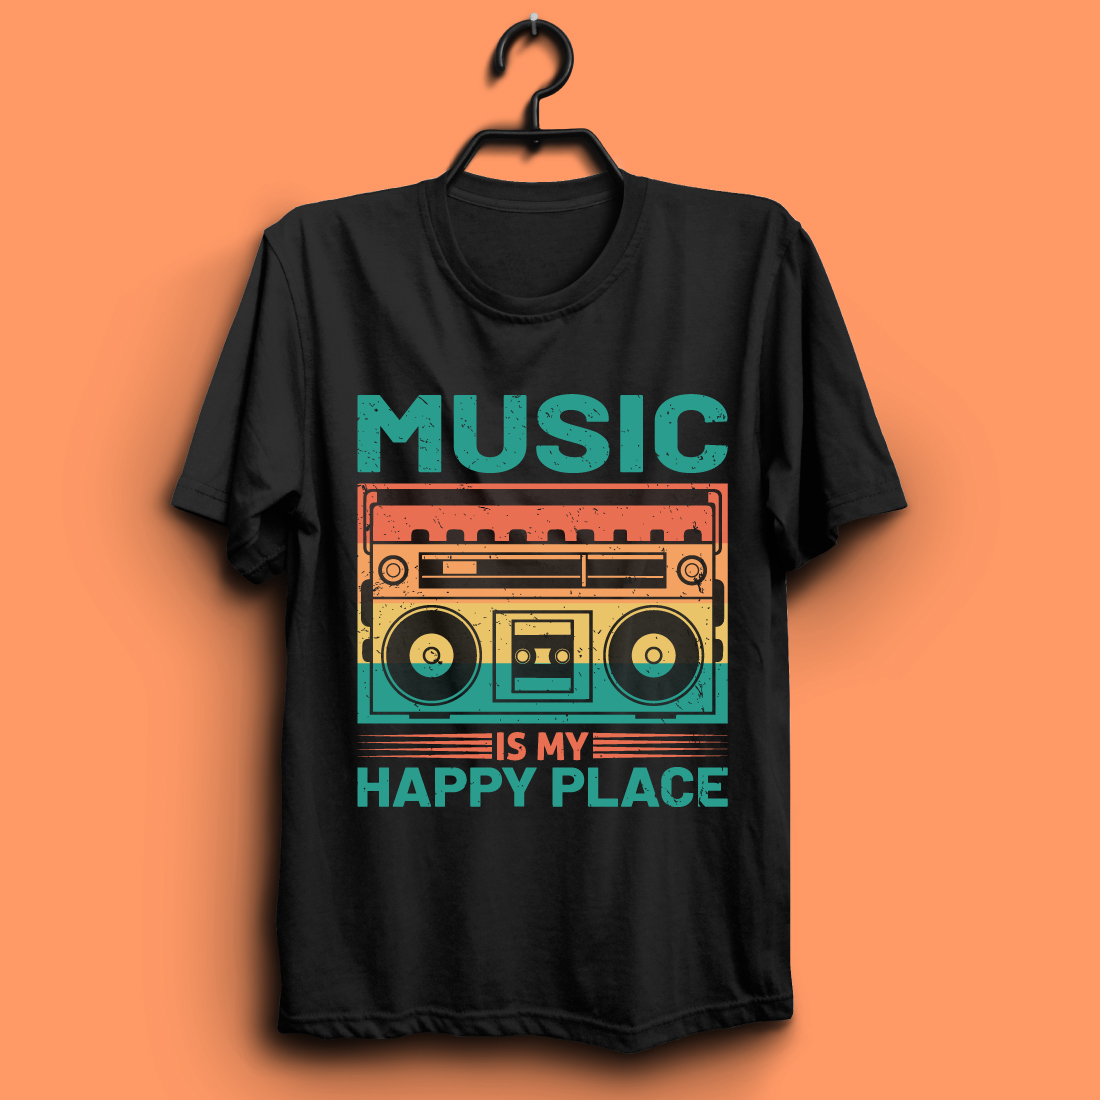 music t shirt design01 949